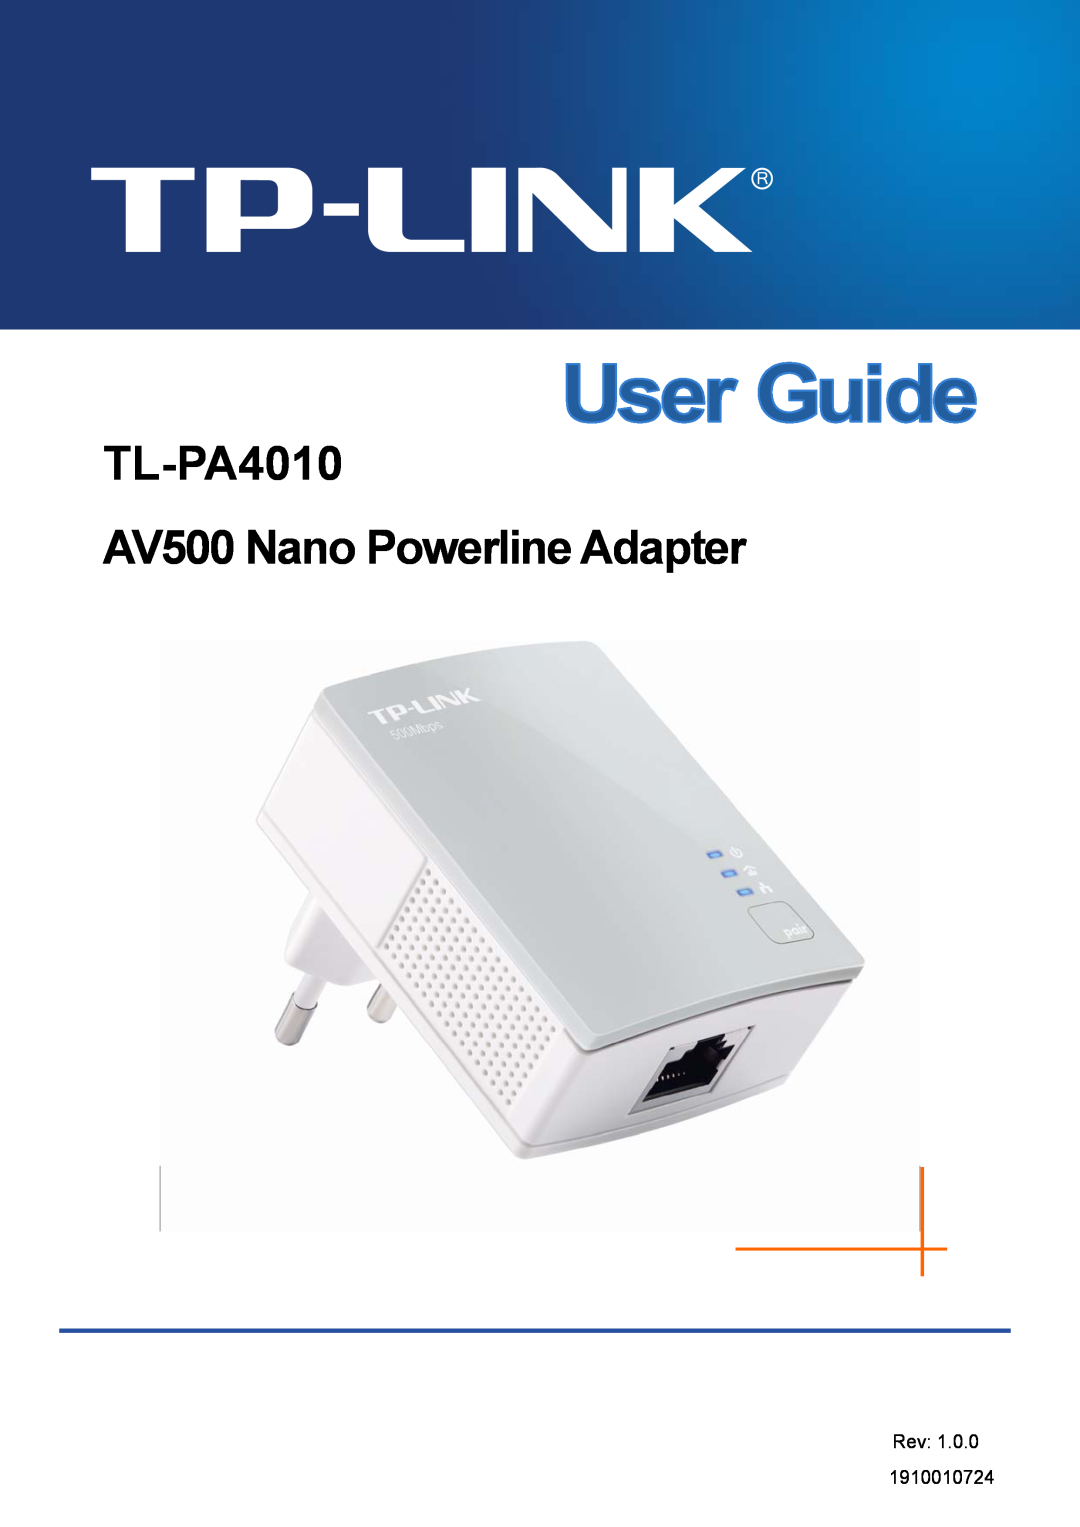 TP-Link manual TL-PA4010 AV500 Nano Powerline Adapter, Rev 1.0.0 